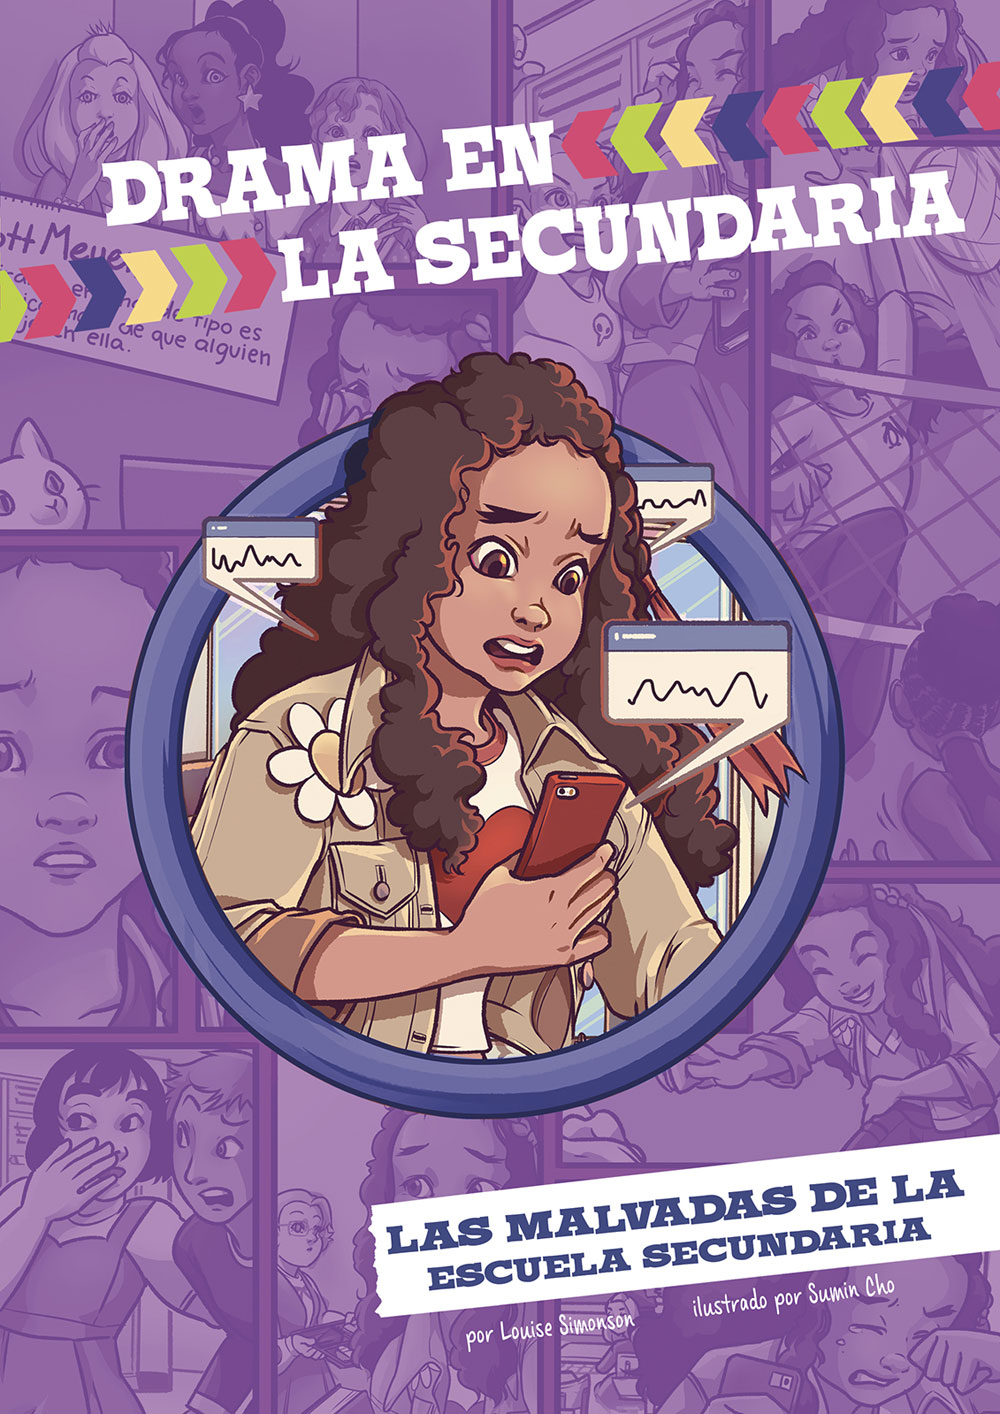 Drama en la secundaria: Las malvadas de la escuela secundaria Spanish Level 3+ Graphic Reader